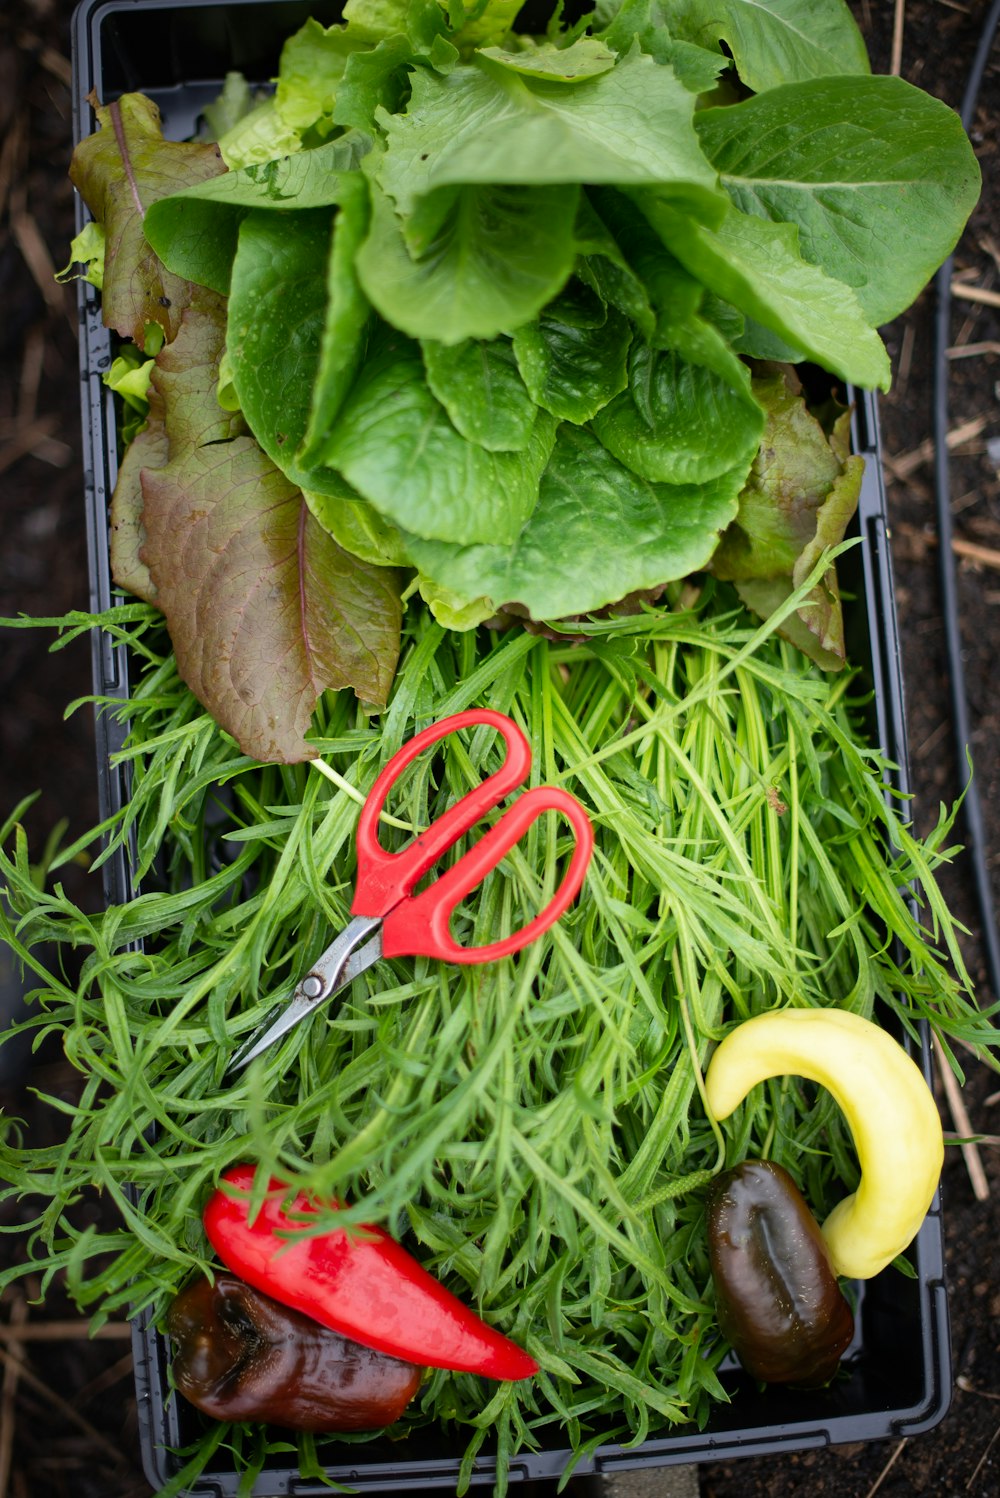 forbici con manico rosso accanto a verdura verde